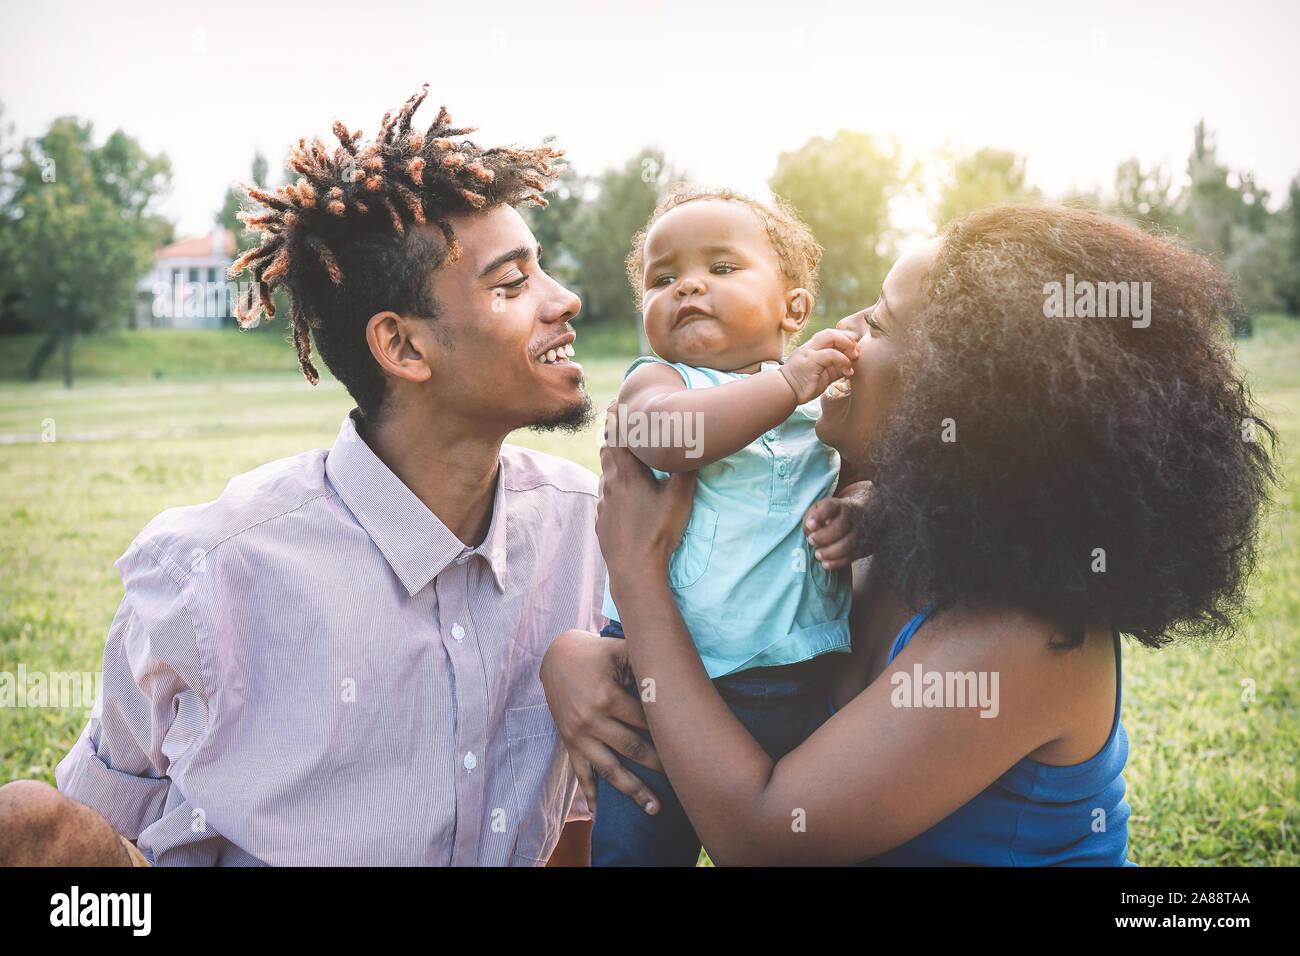 Happy Family noir un moment de tendresse pendant le week-end en plein air - La mère et le père s'amusant avec leur fille dans un parc public Banque D'Images